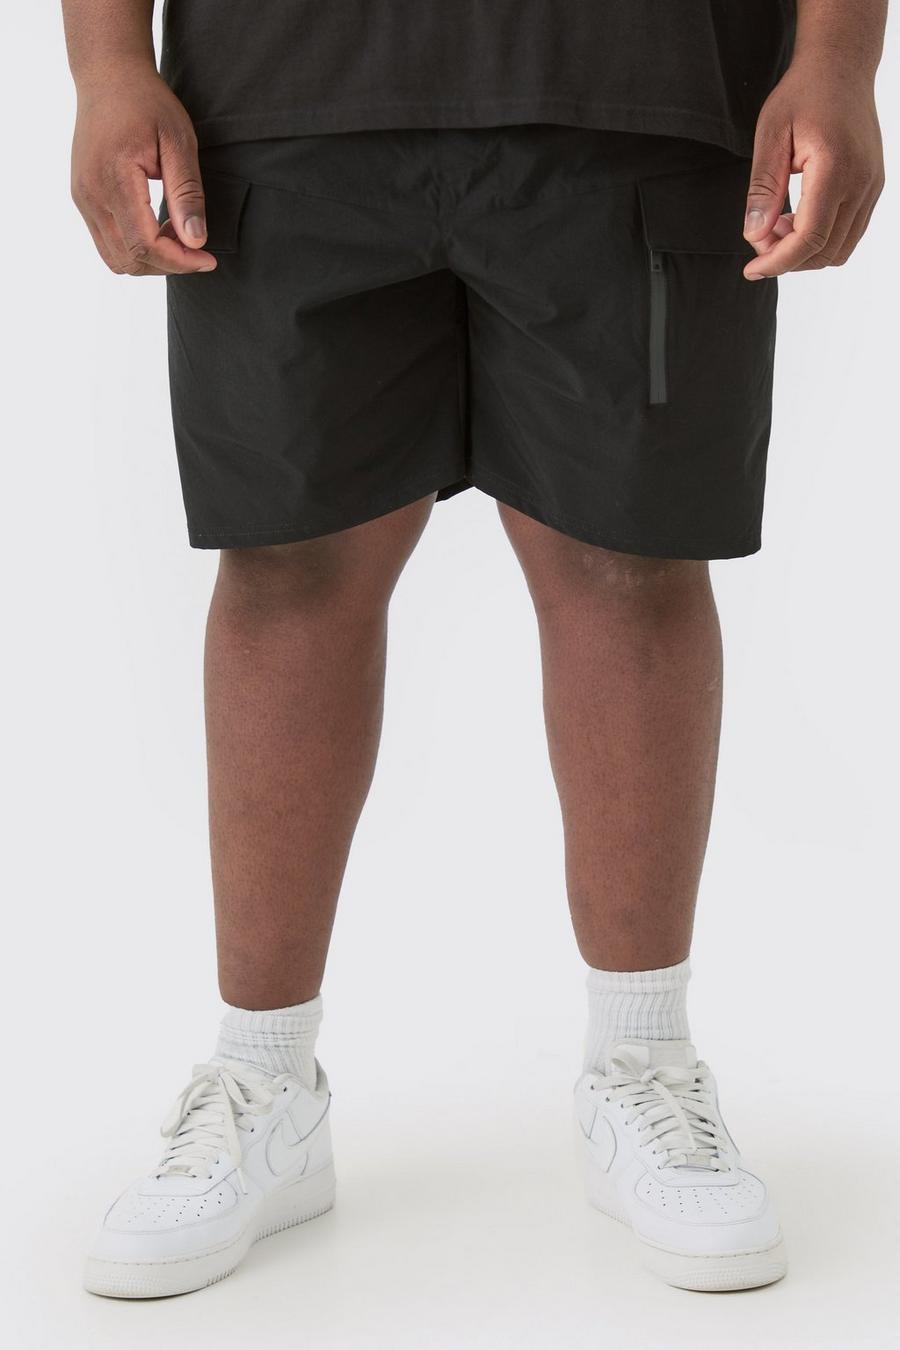 Pantalón corto Plus cargo elástico ligero holgado con cremallera, Black